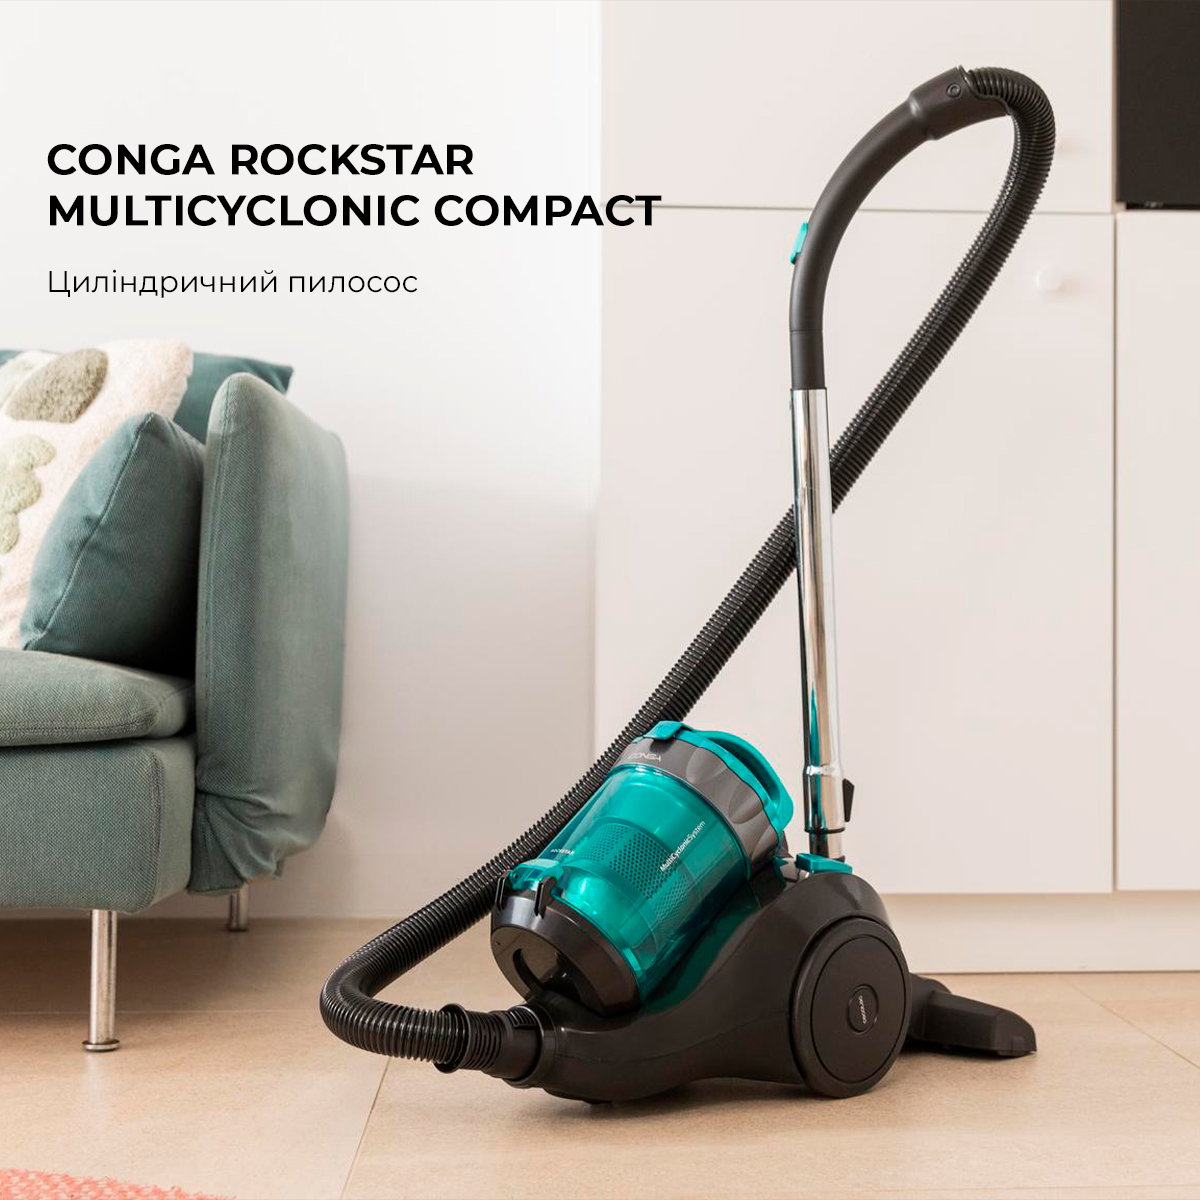 Моющий пылесос Cecotec Conga Rockstar Wet & Dry Compact (CCTC-08111) –  фото, отзывы, характеристики в интернет-магазине ROZETKA